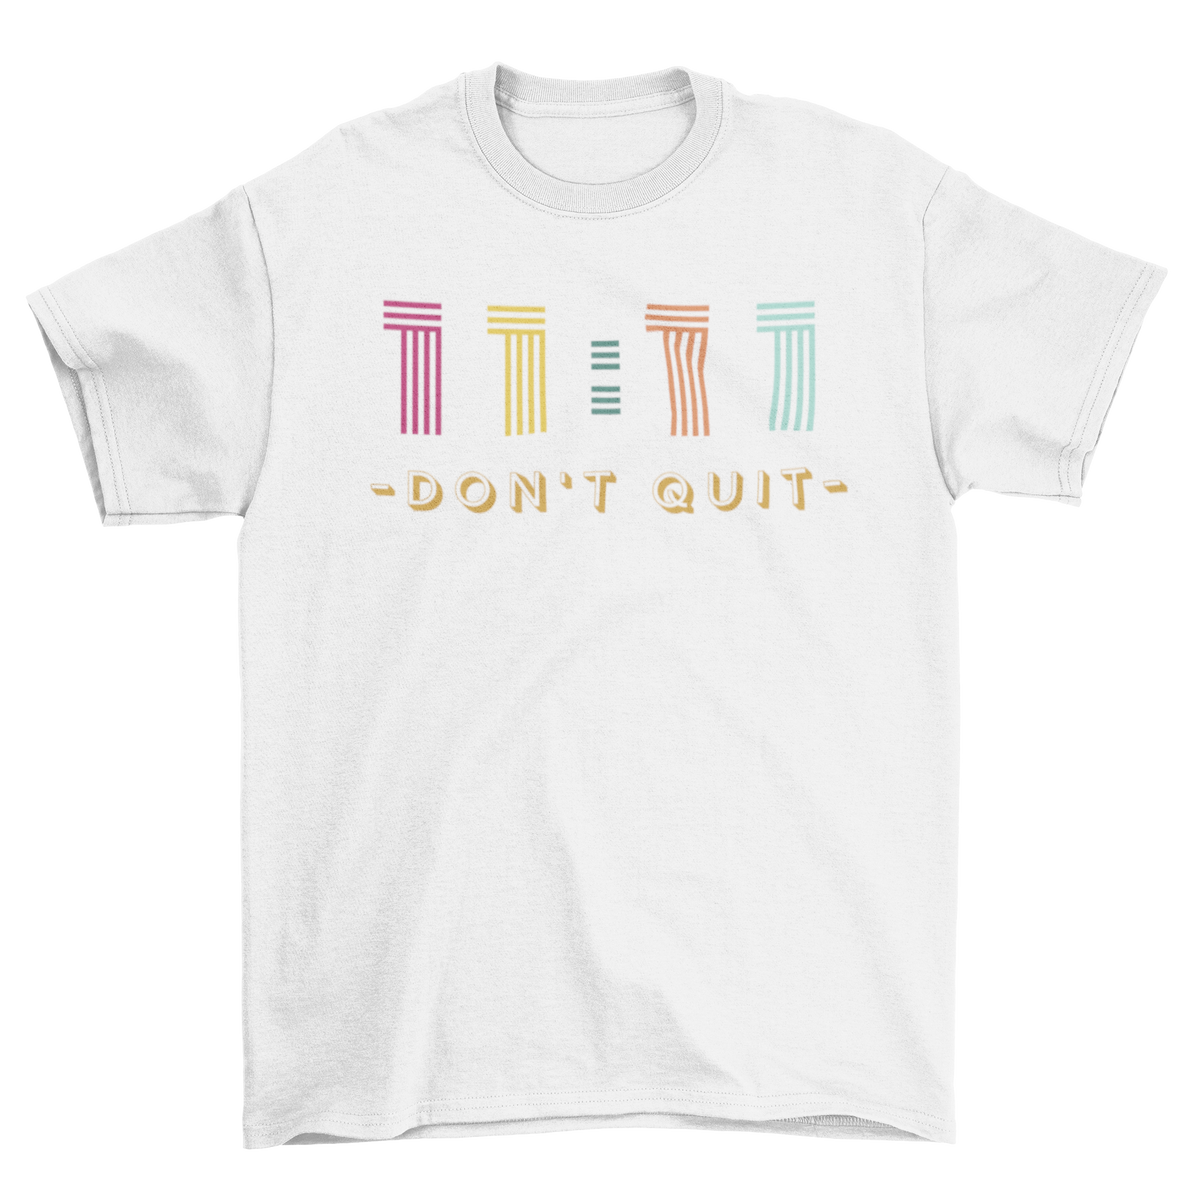 Don't quit - T-shirt Unisex